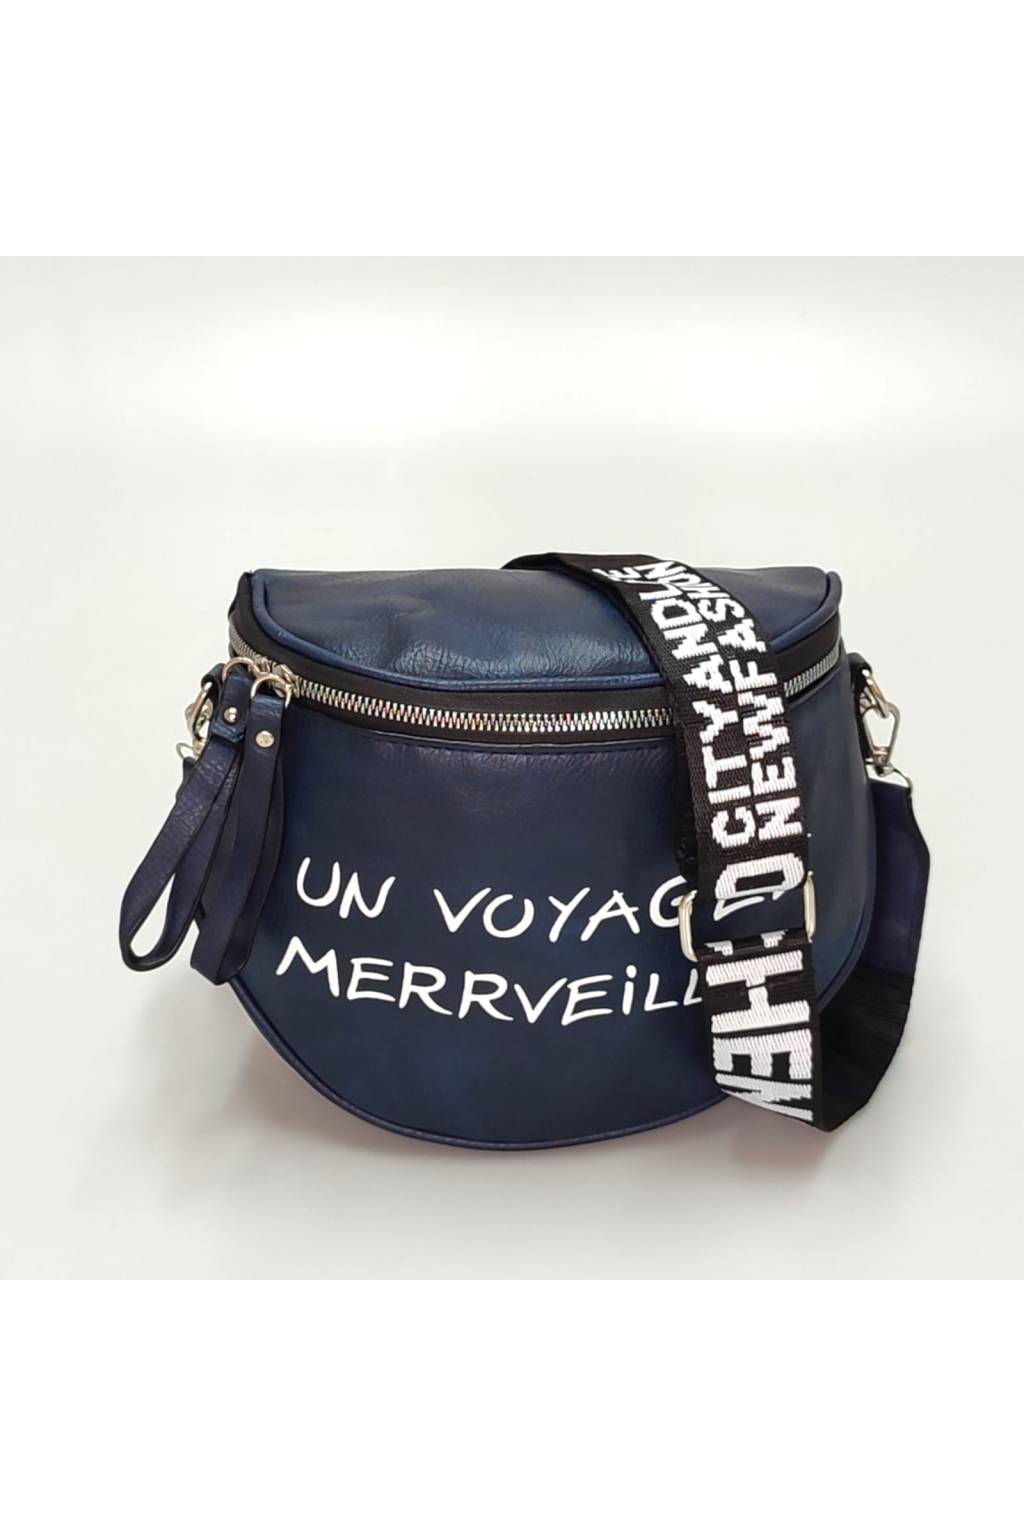 A - Damen Nierentasche TRENDY dunkelblau - handtaschen-ausverkauf.de